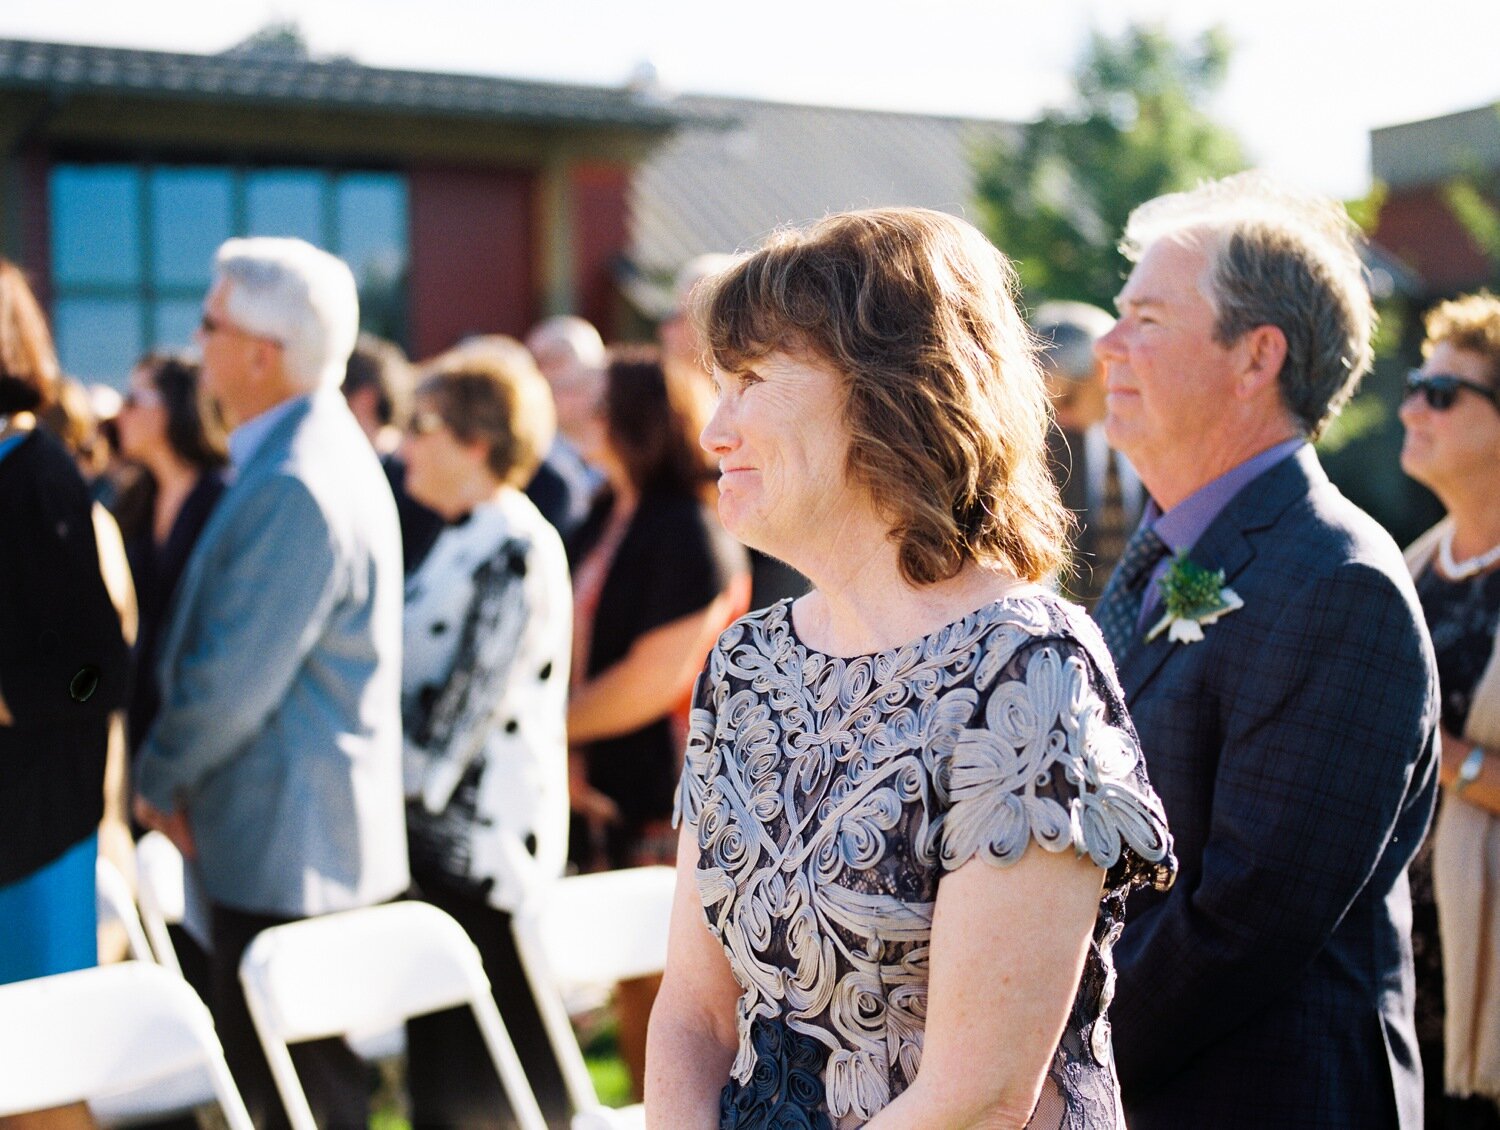 rosehill community center outdoor wedding ceremony 12.jpg